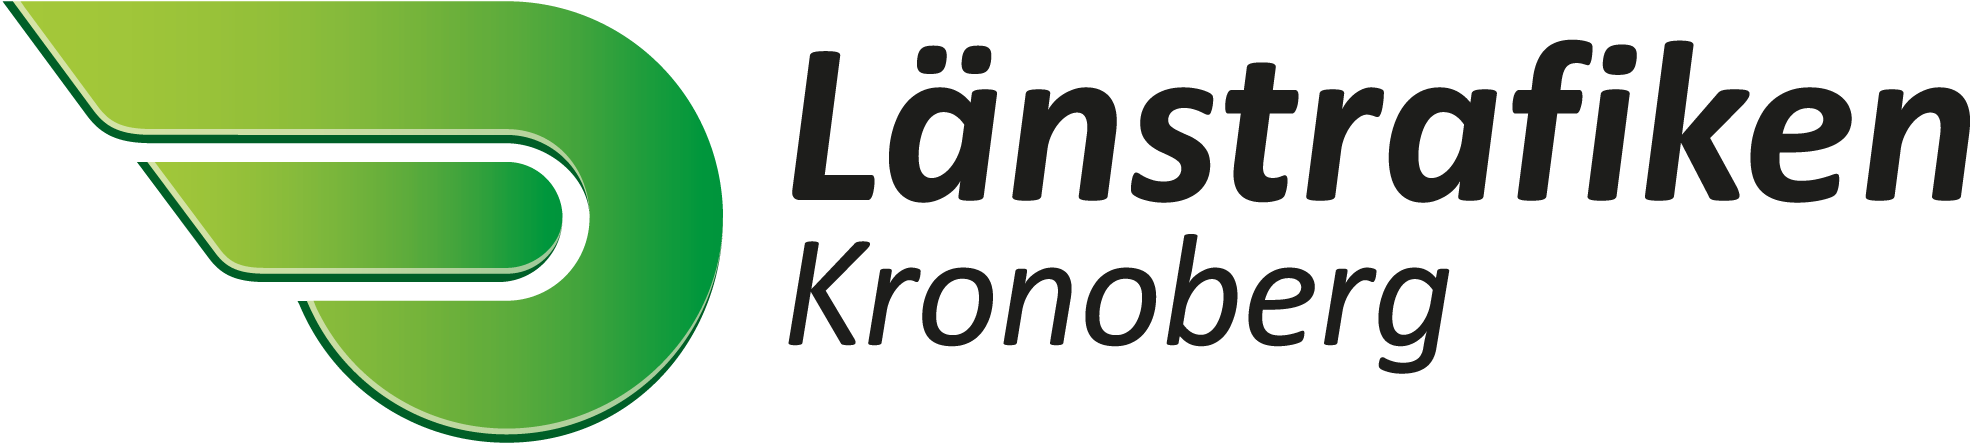 Länstrafiken Kronoberg